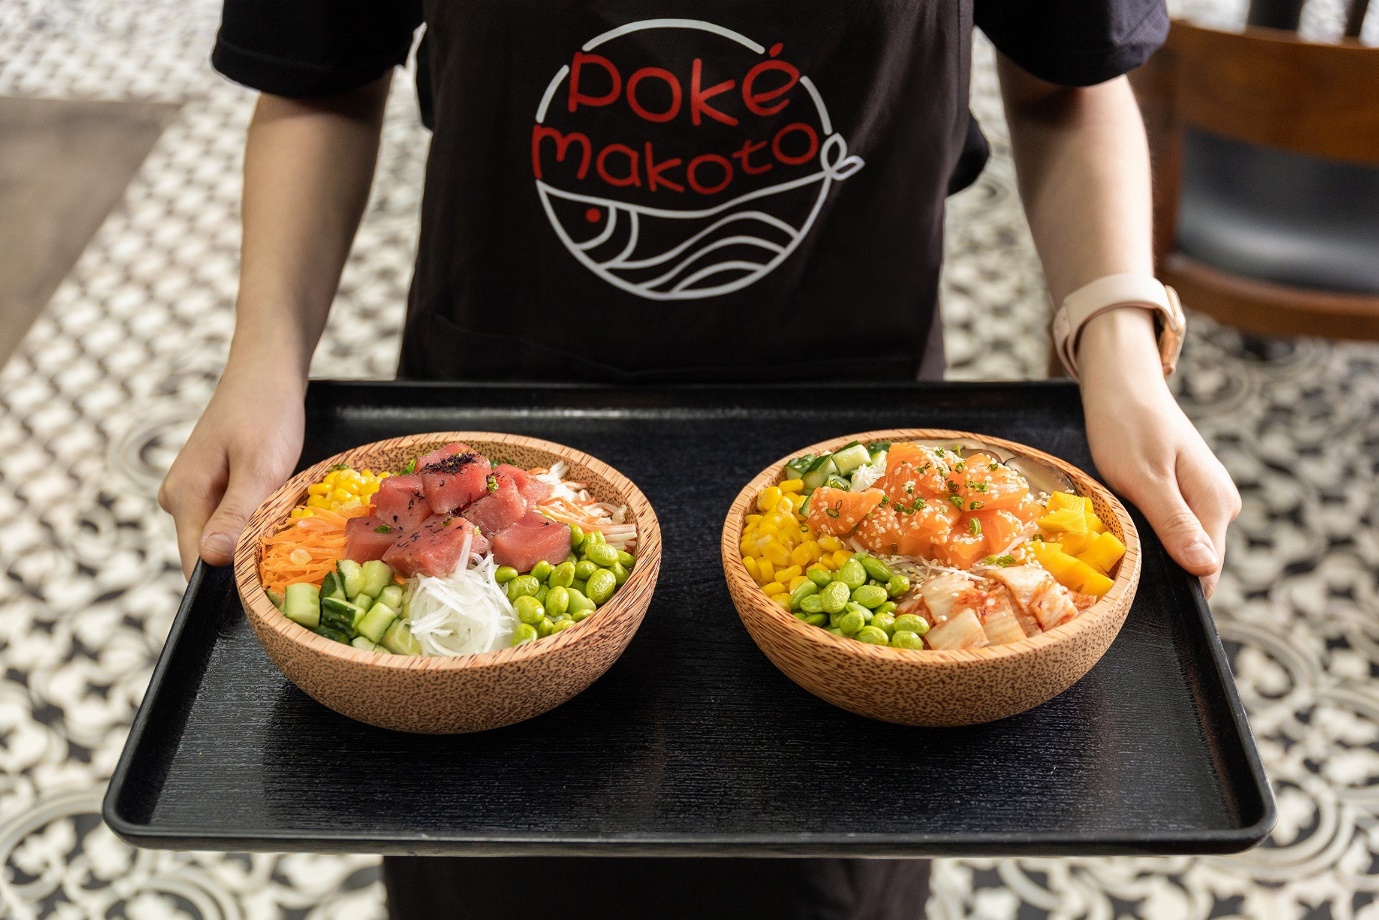 Khám phá Poke Bowl - Món ngon thú vị mới mà giới sành ăn Hà Nội đang rủ nhau lên phố thử - Ảnh 5.